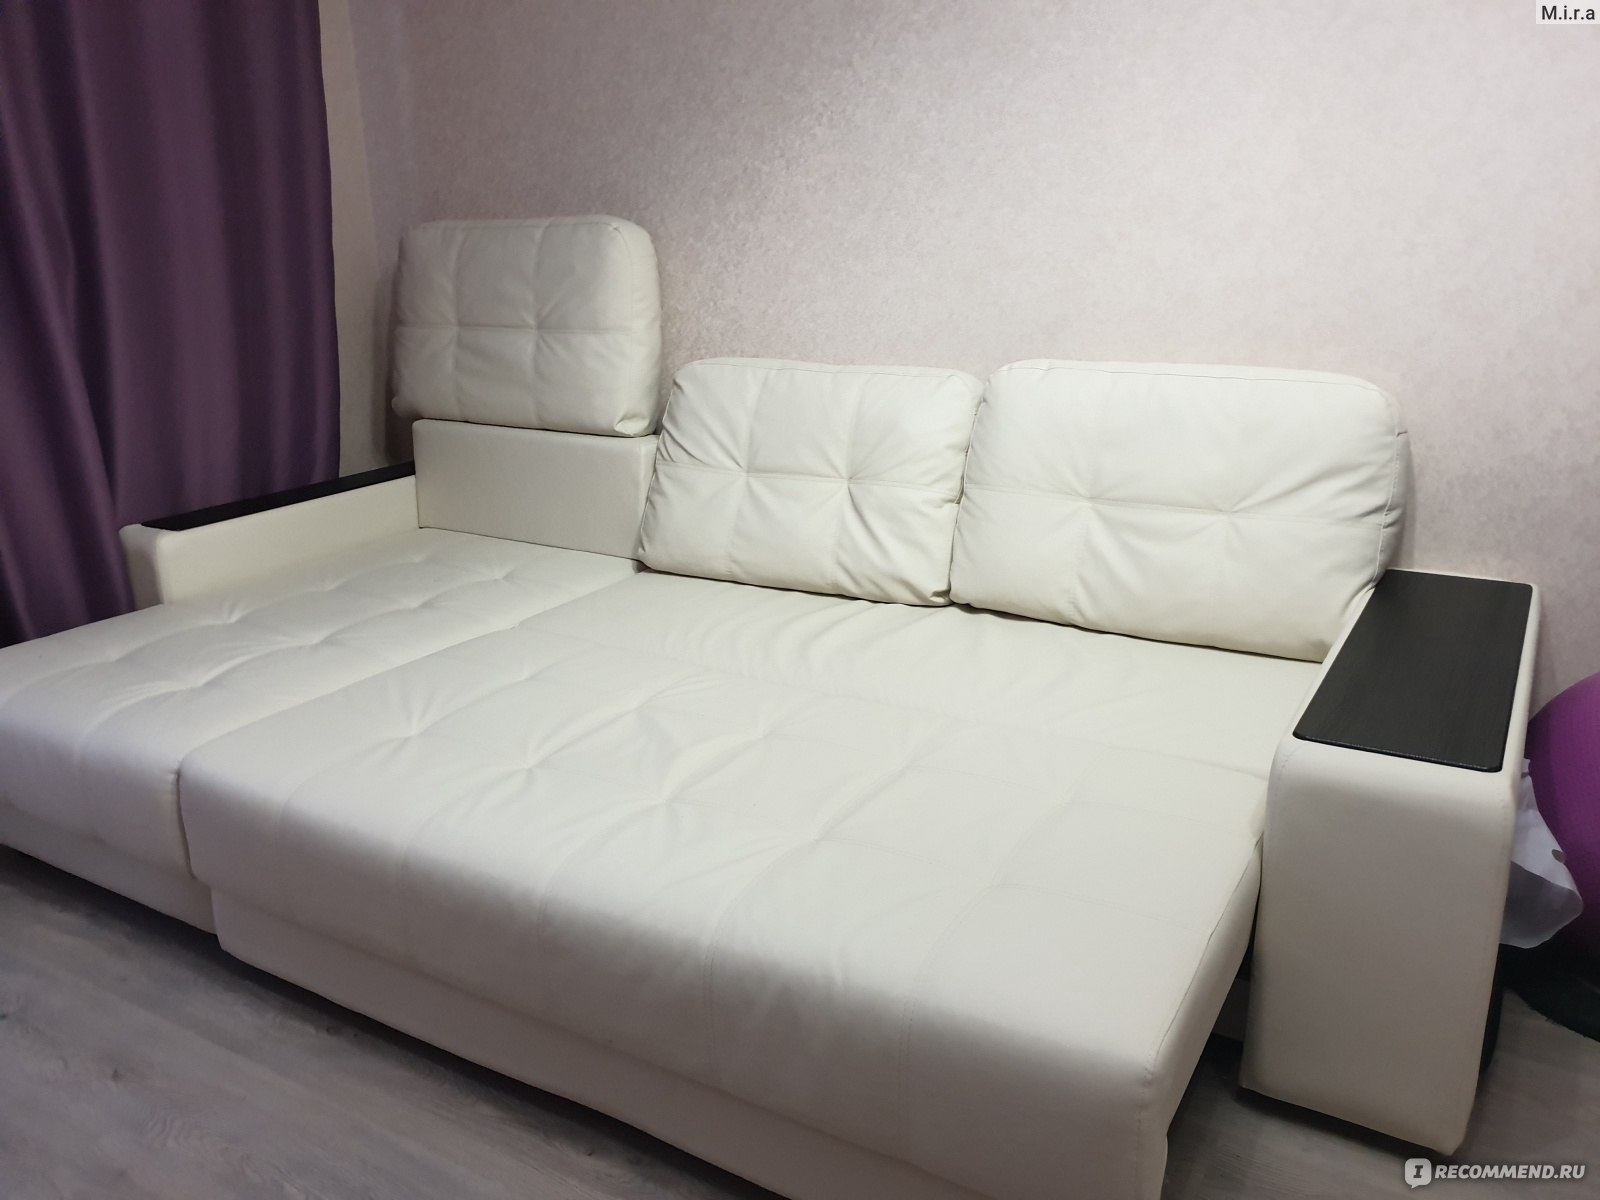 Кровать Милан 160х200 с подъемным механизмом серого цвета